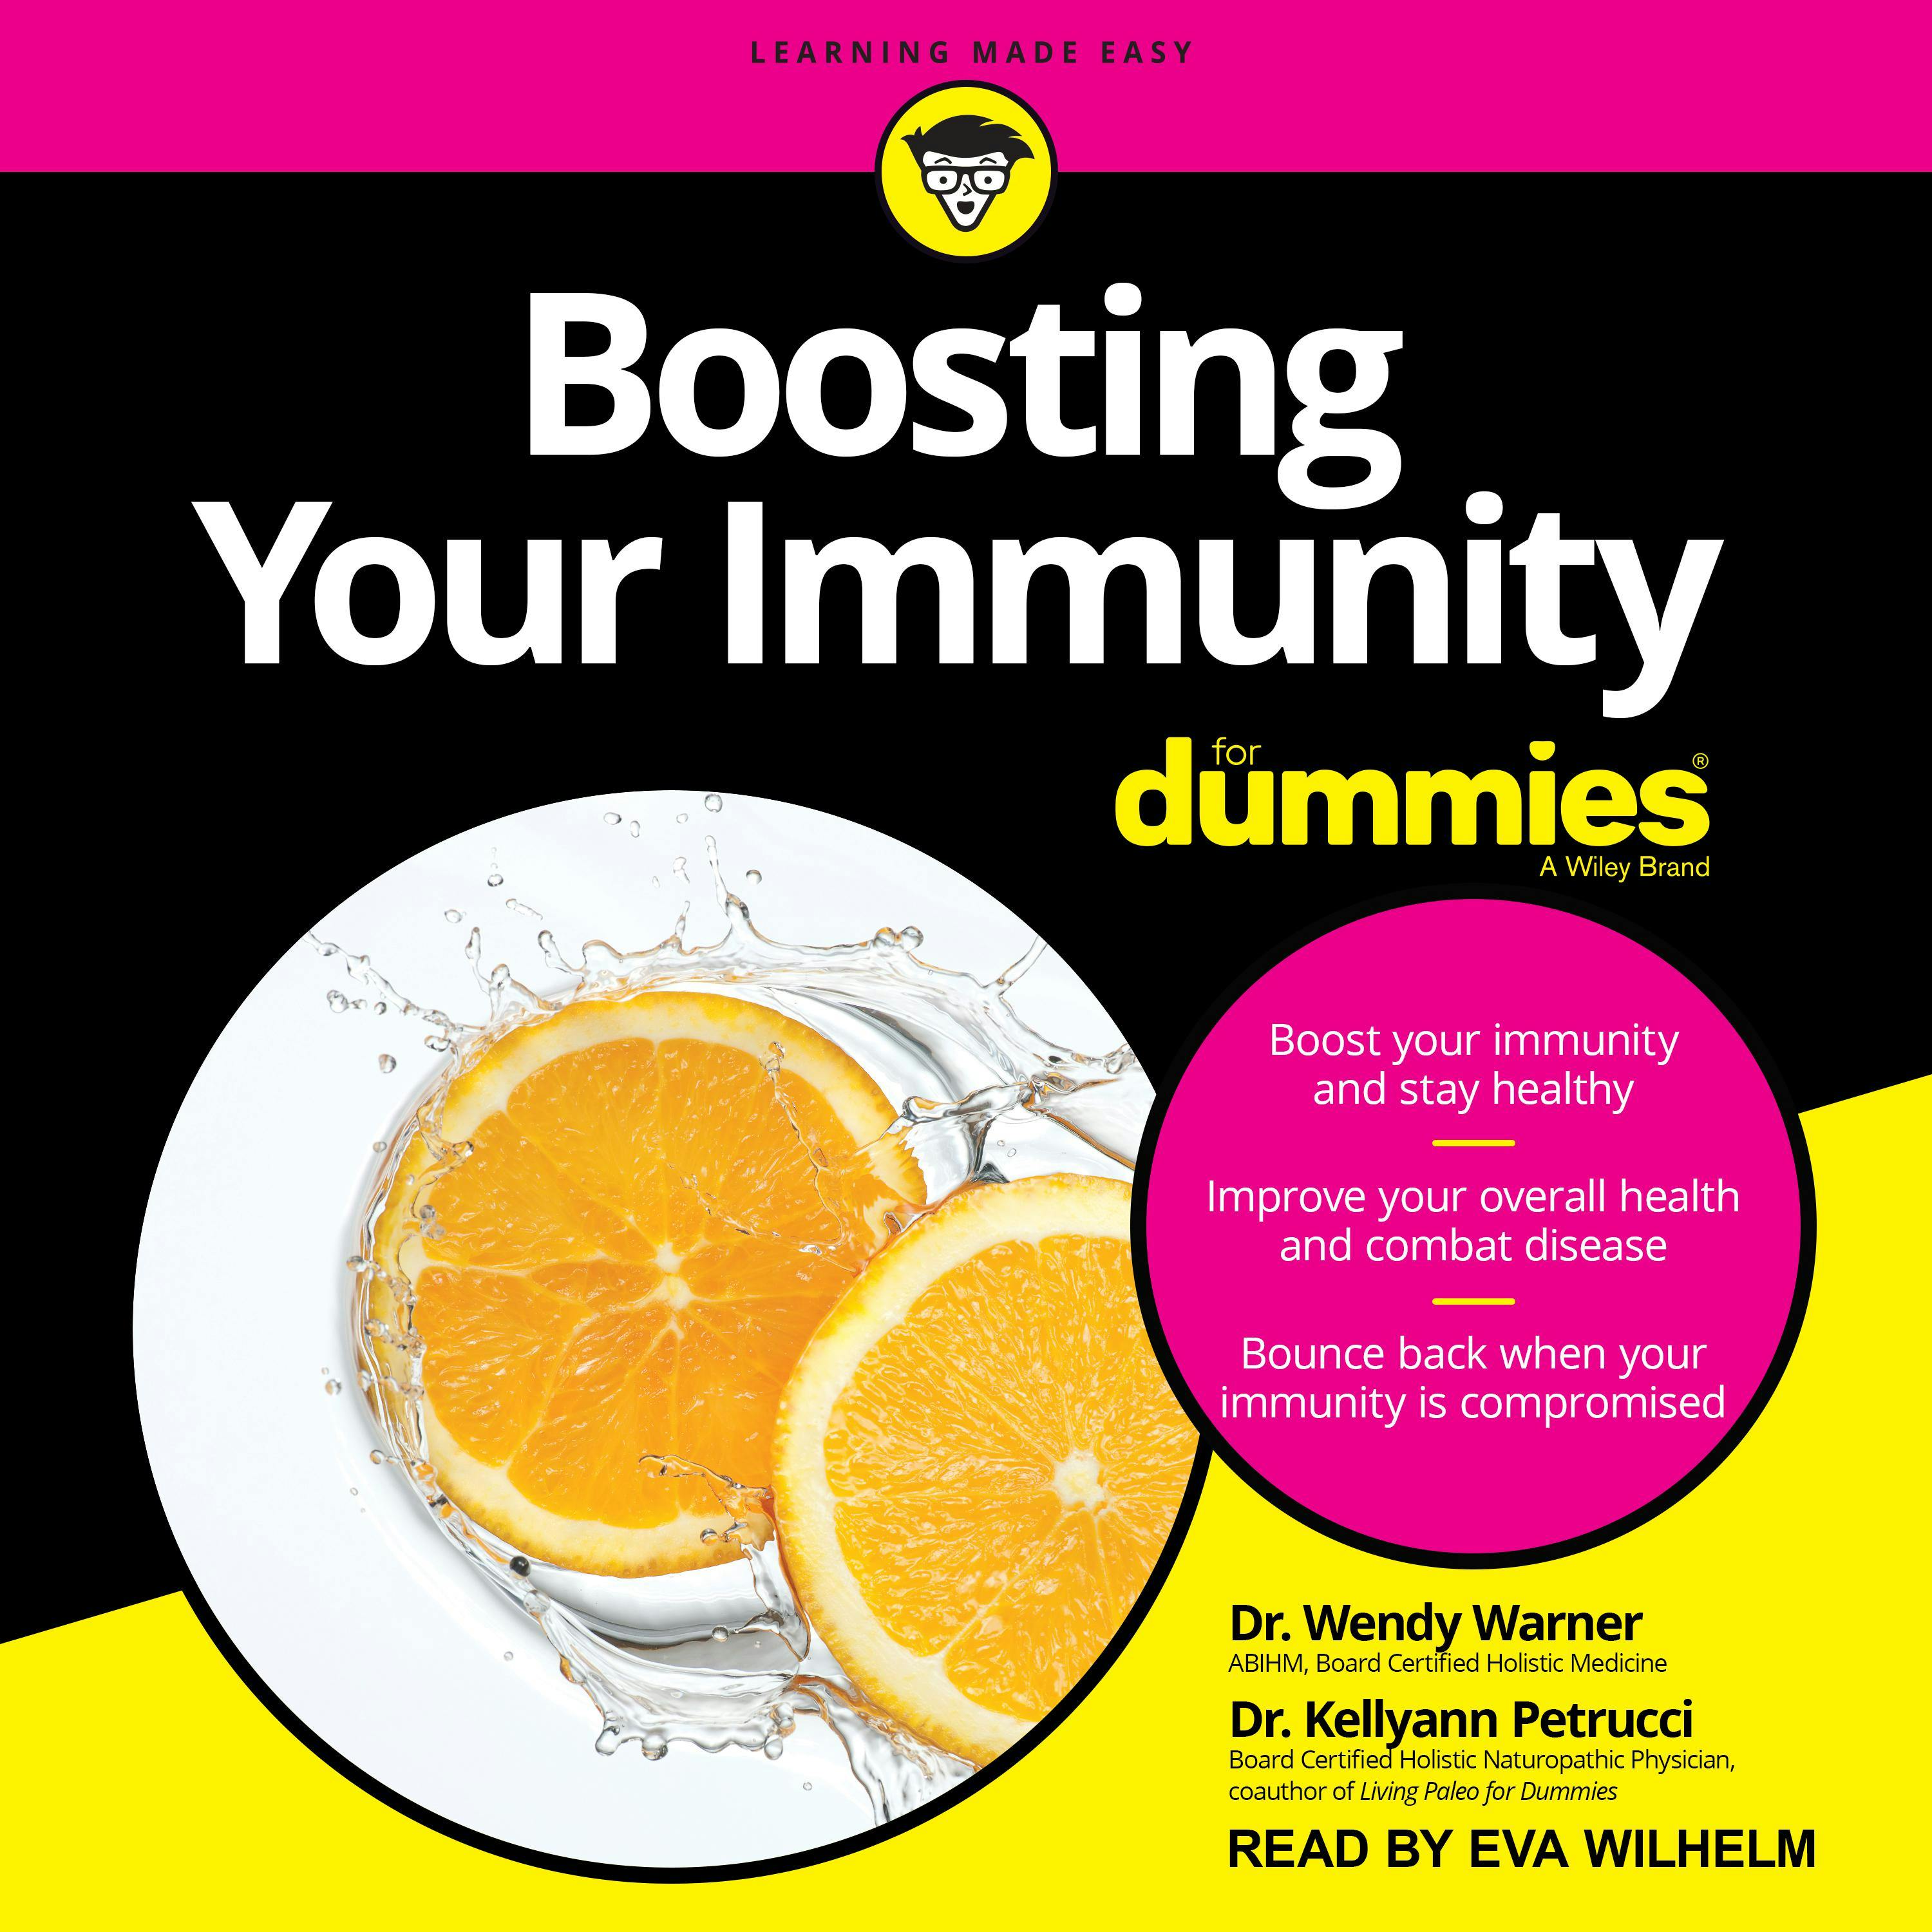 Boosting Your Immunity For Dummies - Dr. Wendy Warner, Dr. Kellyann Petrucci